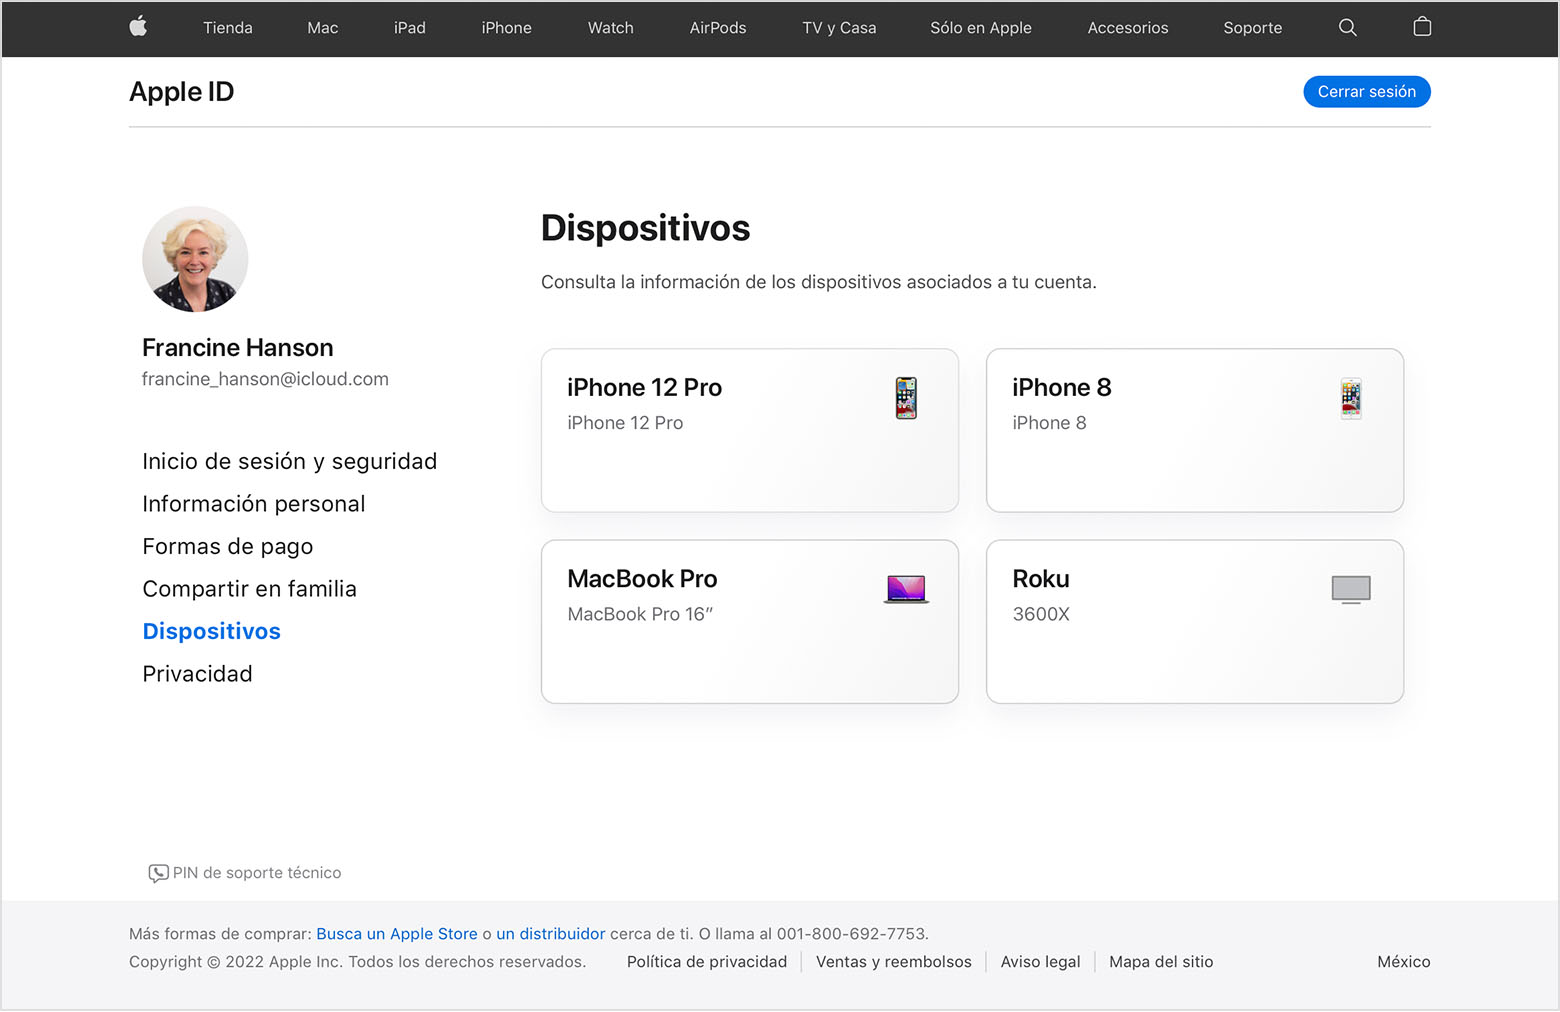 Imagen de appleid.apple.com en la que se muestran tres dispositivos para Francine Hanson: un iPhone 12 Pro, una MacBook Pro y un Roku.